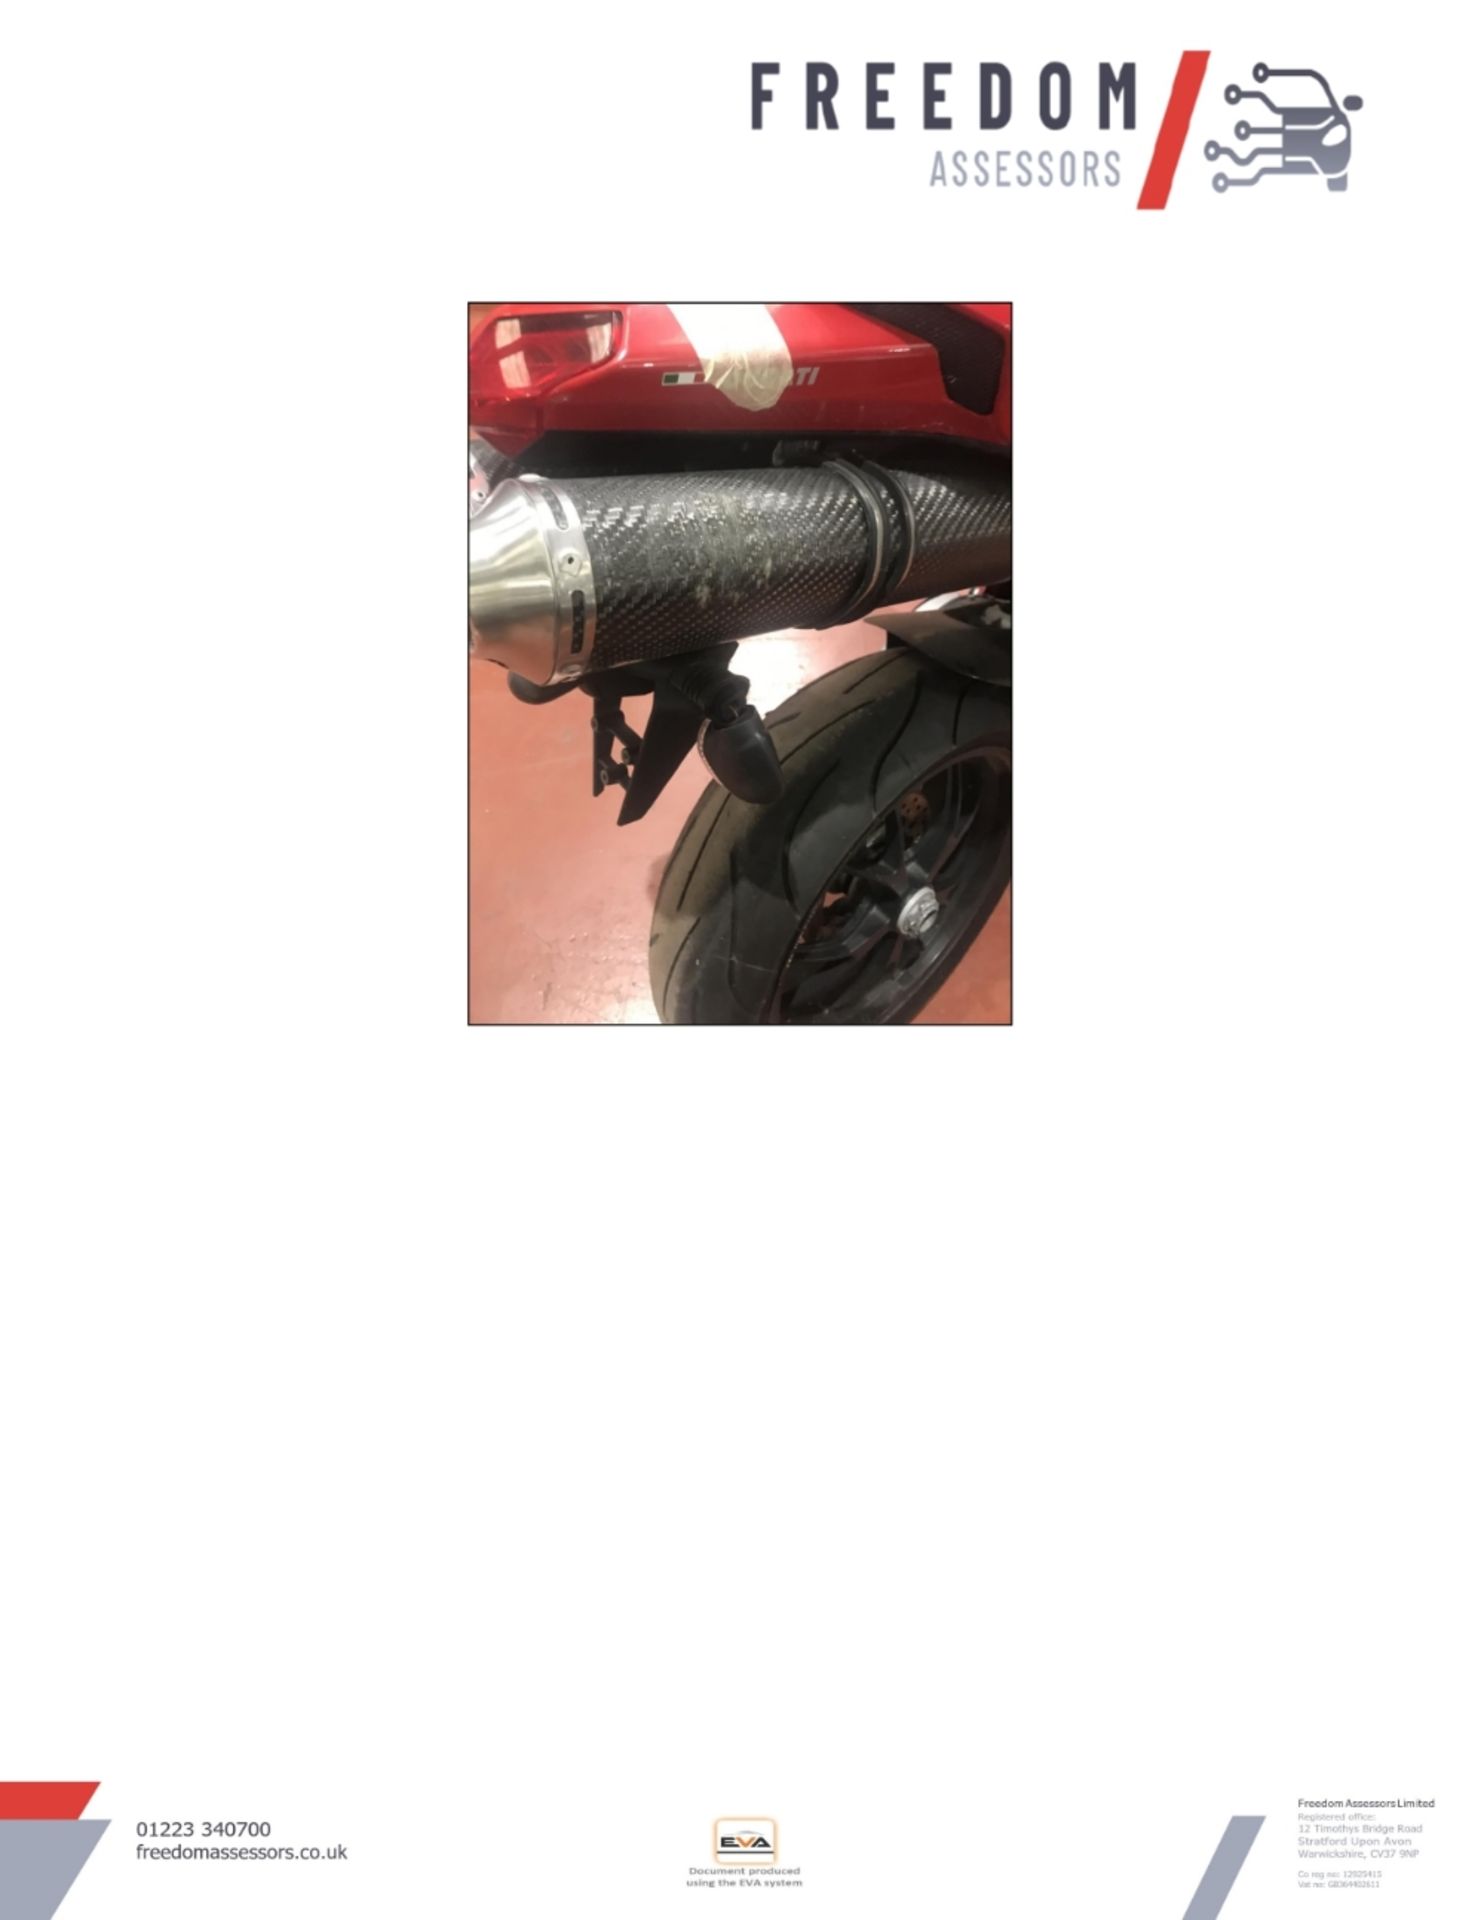 GX10 KTE Ducati 848 Motorcycle - Image 24 of 36